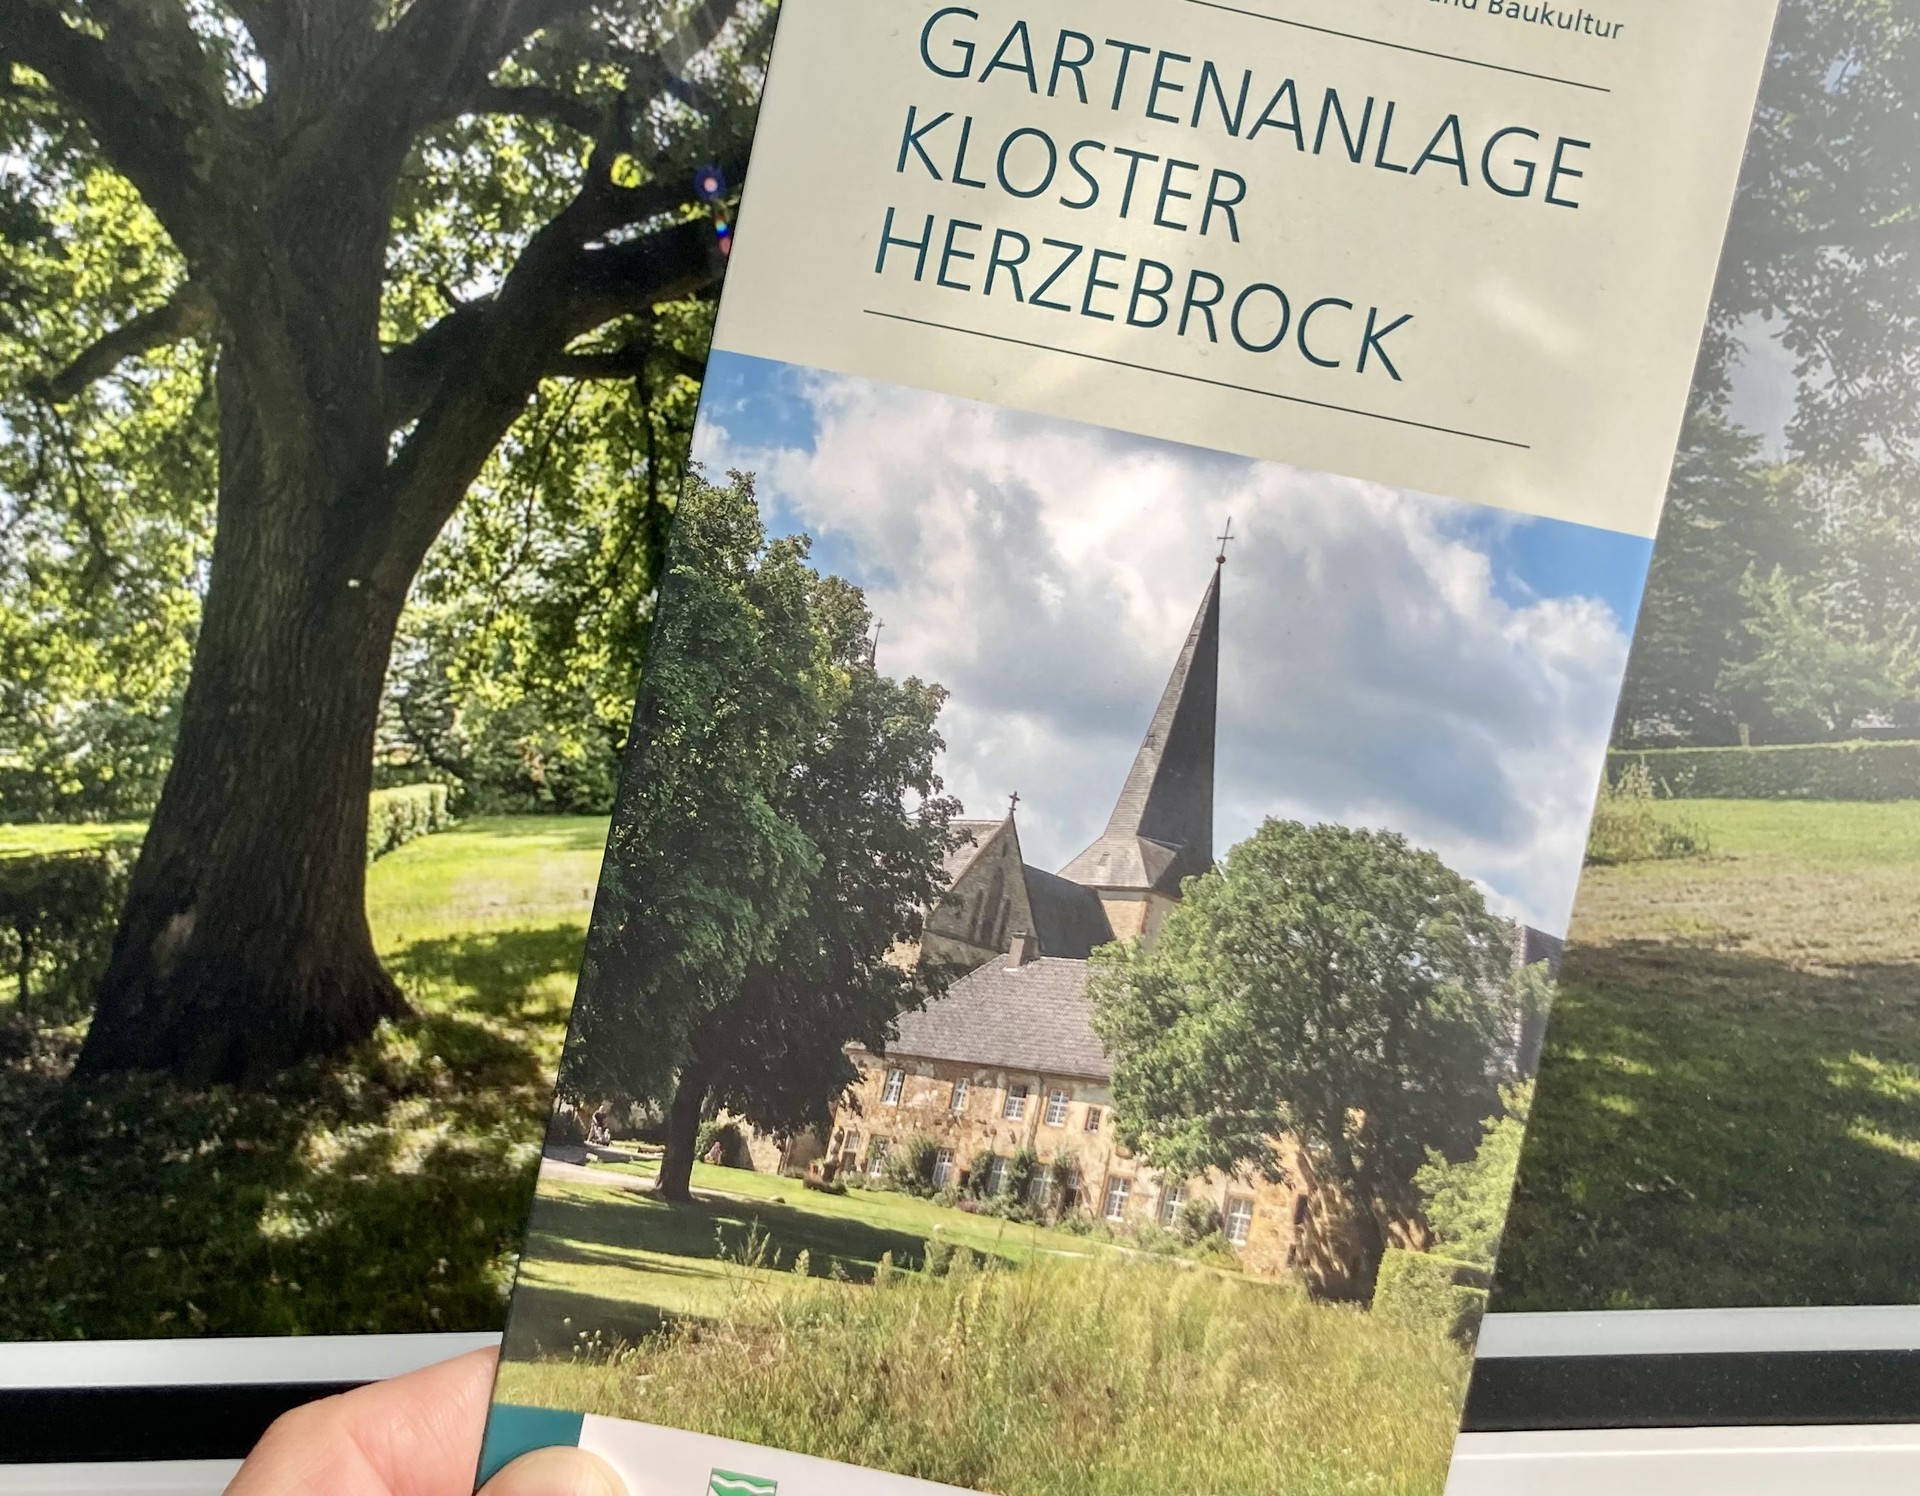 Der neue Flyer "Gartenanlage Kloster Herzebrock" der LWL-Gartenreihe.